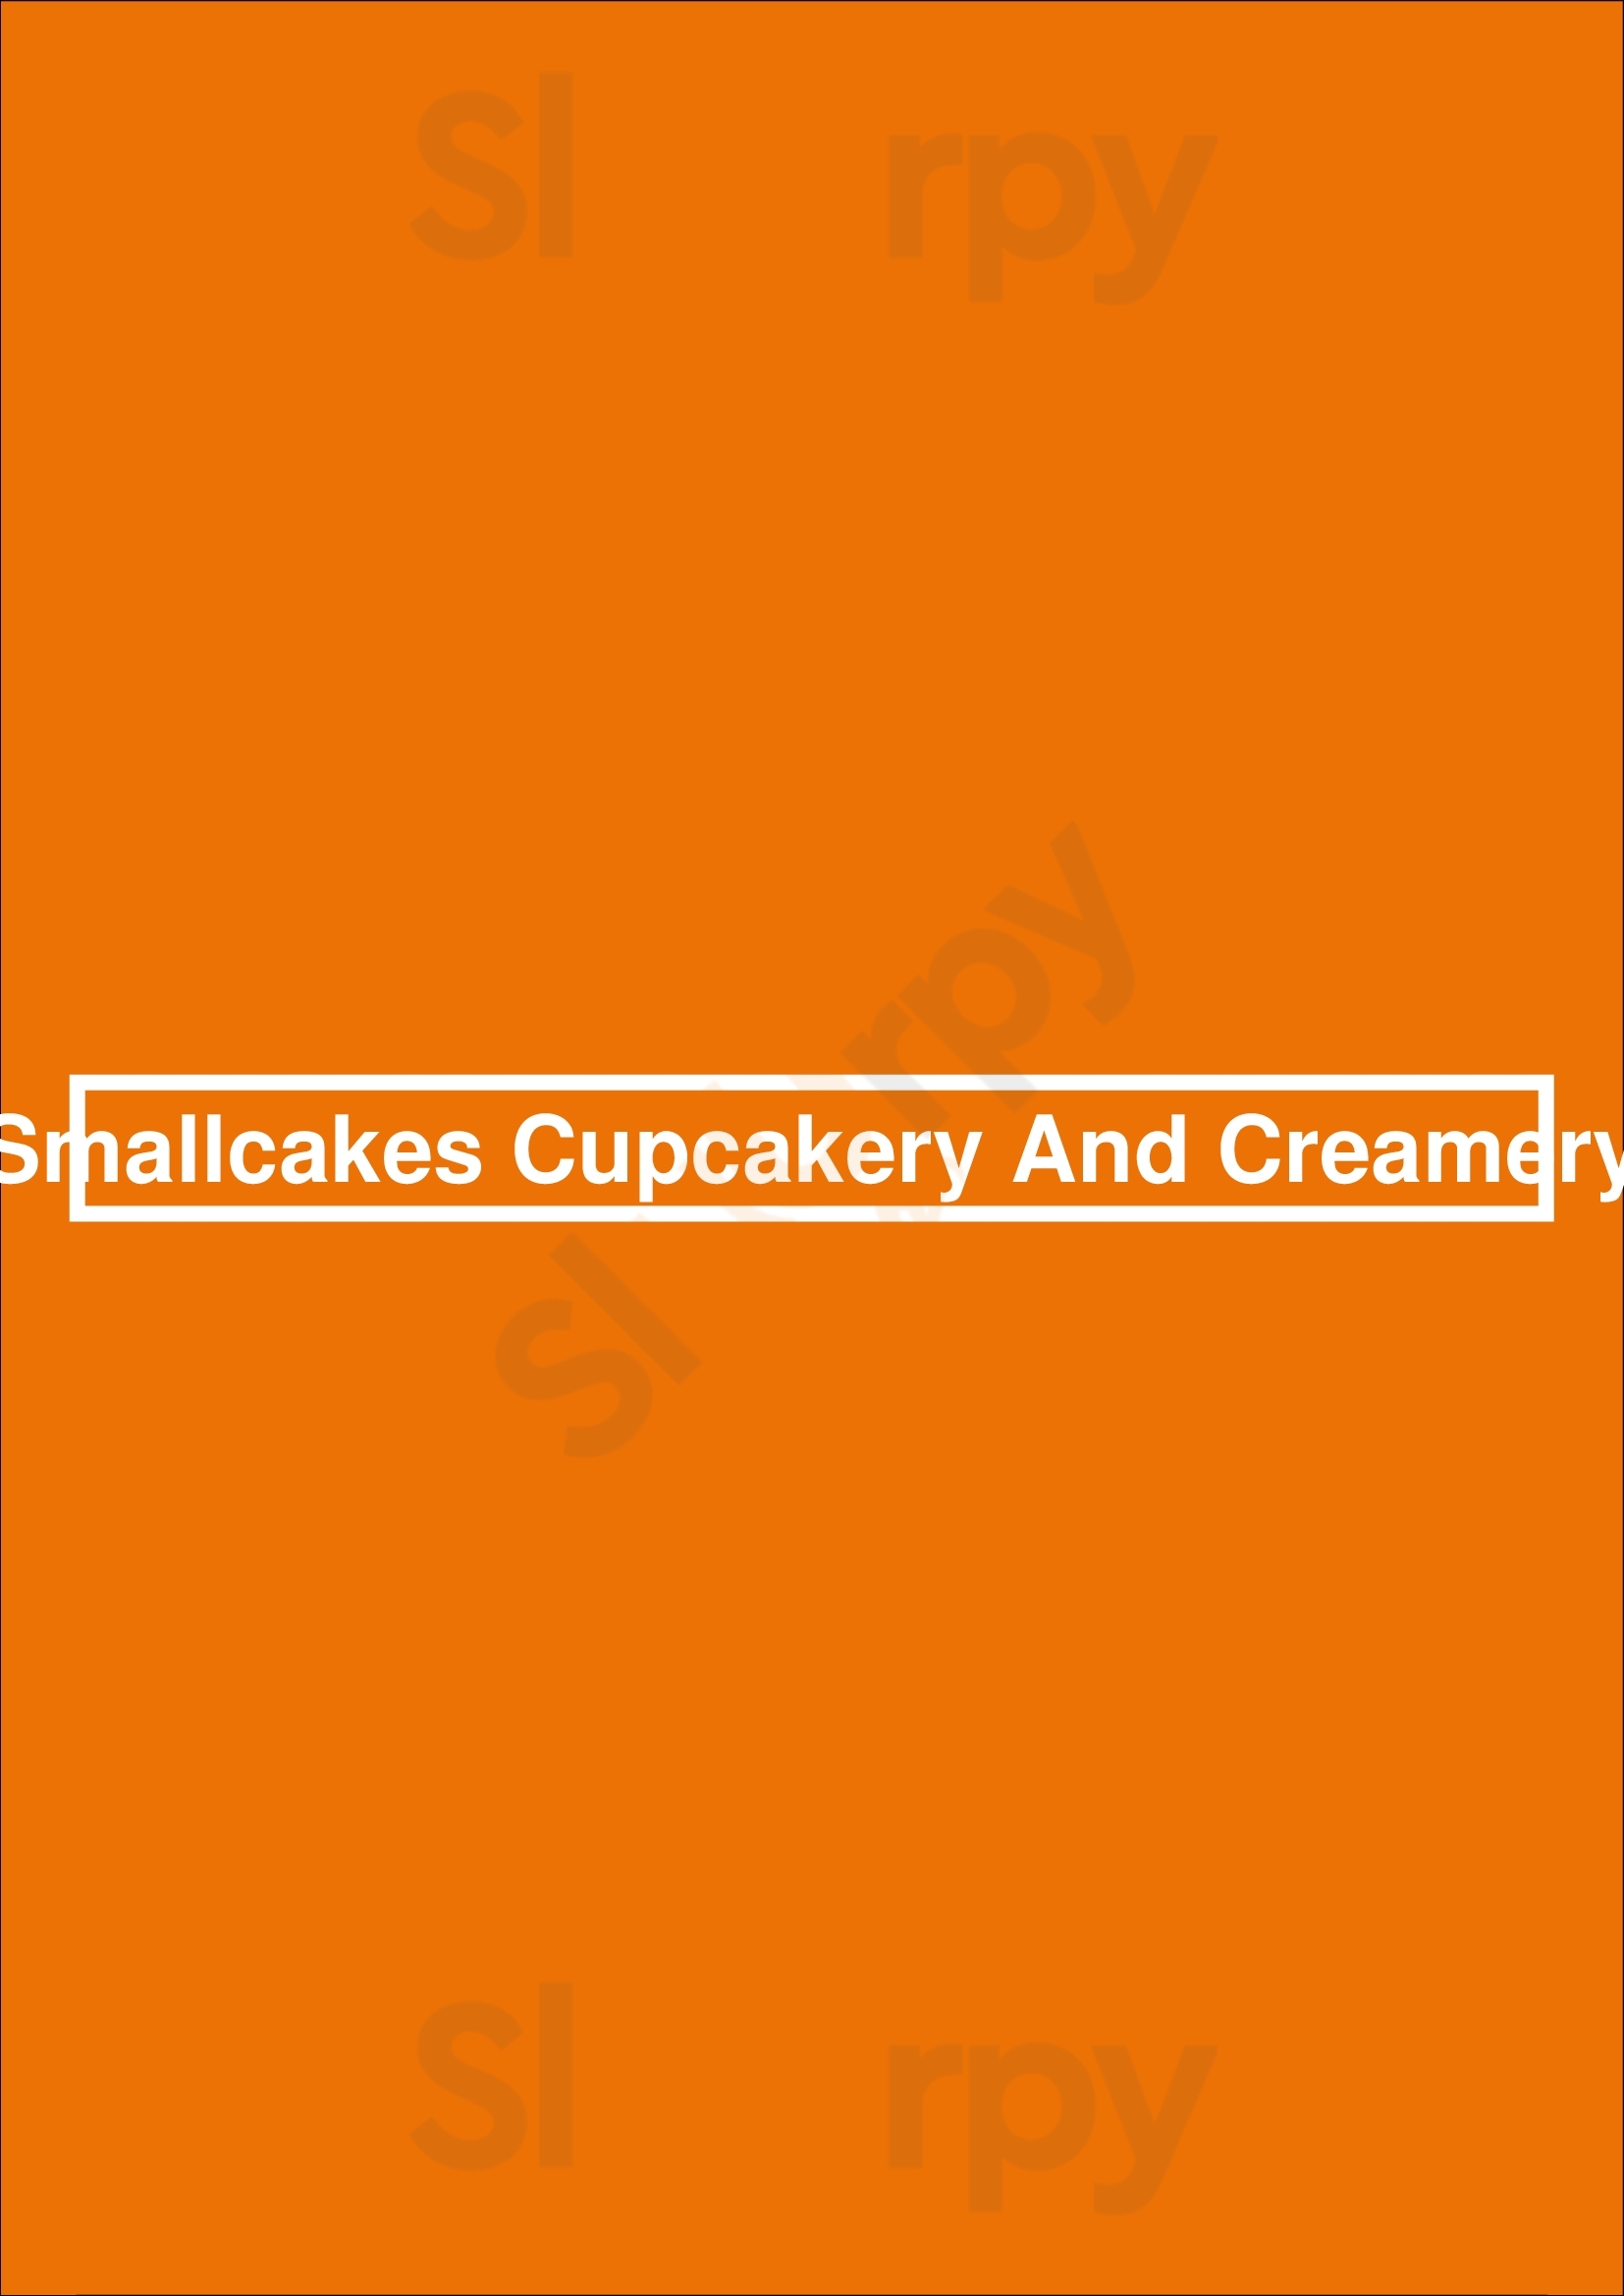 Smallcakes Cupcakery And Creamery Jacksonville Menu - 1